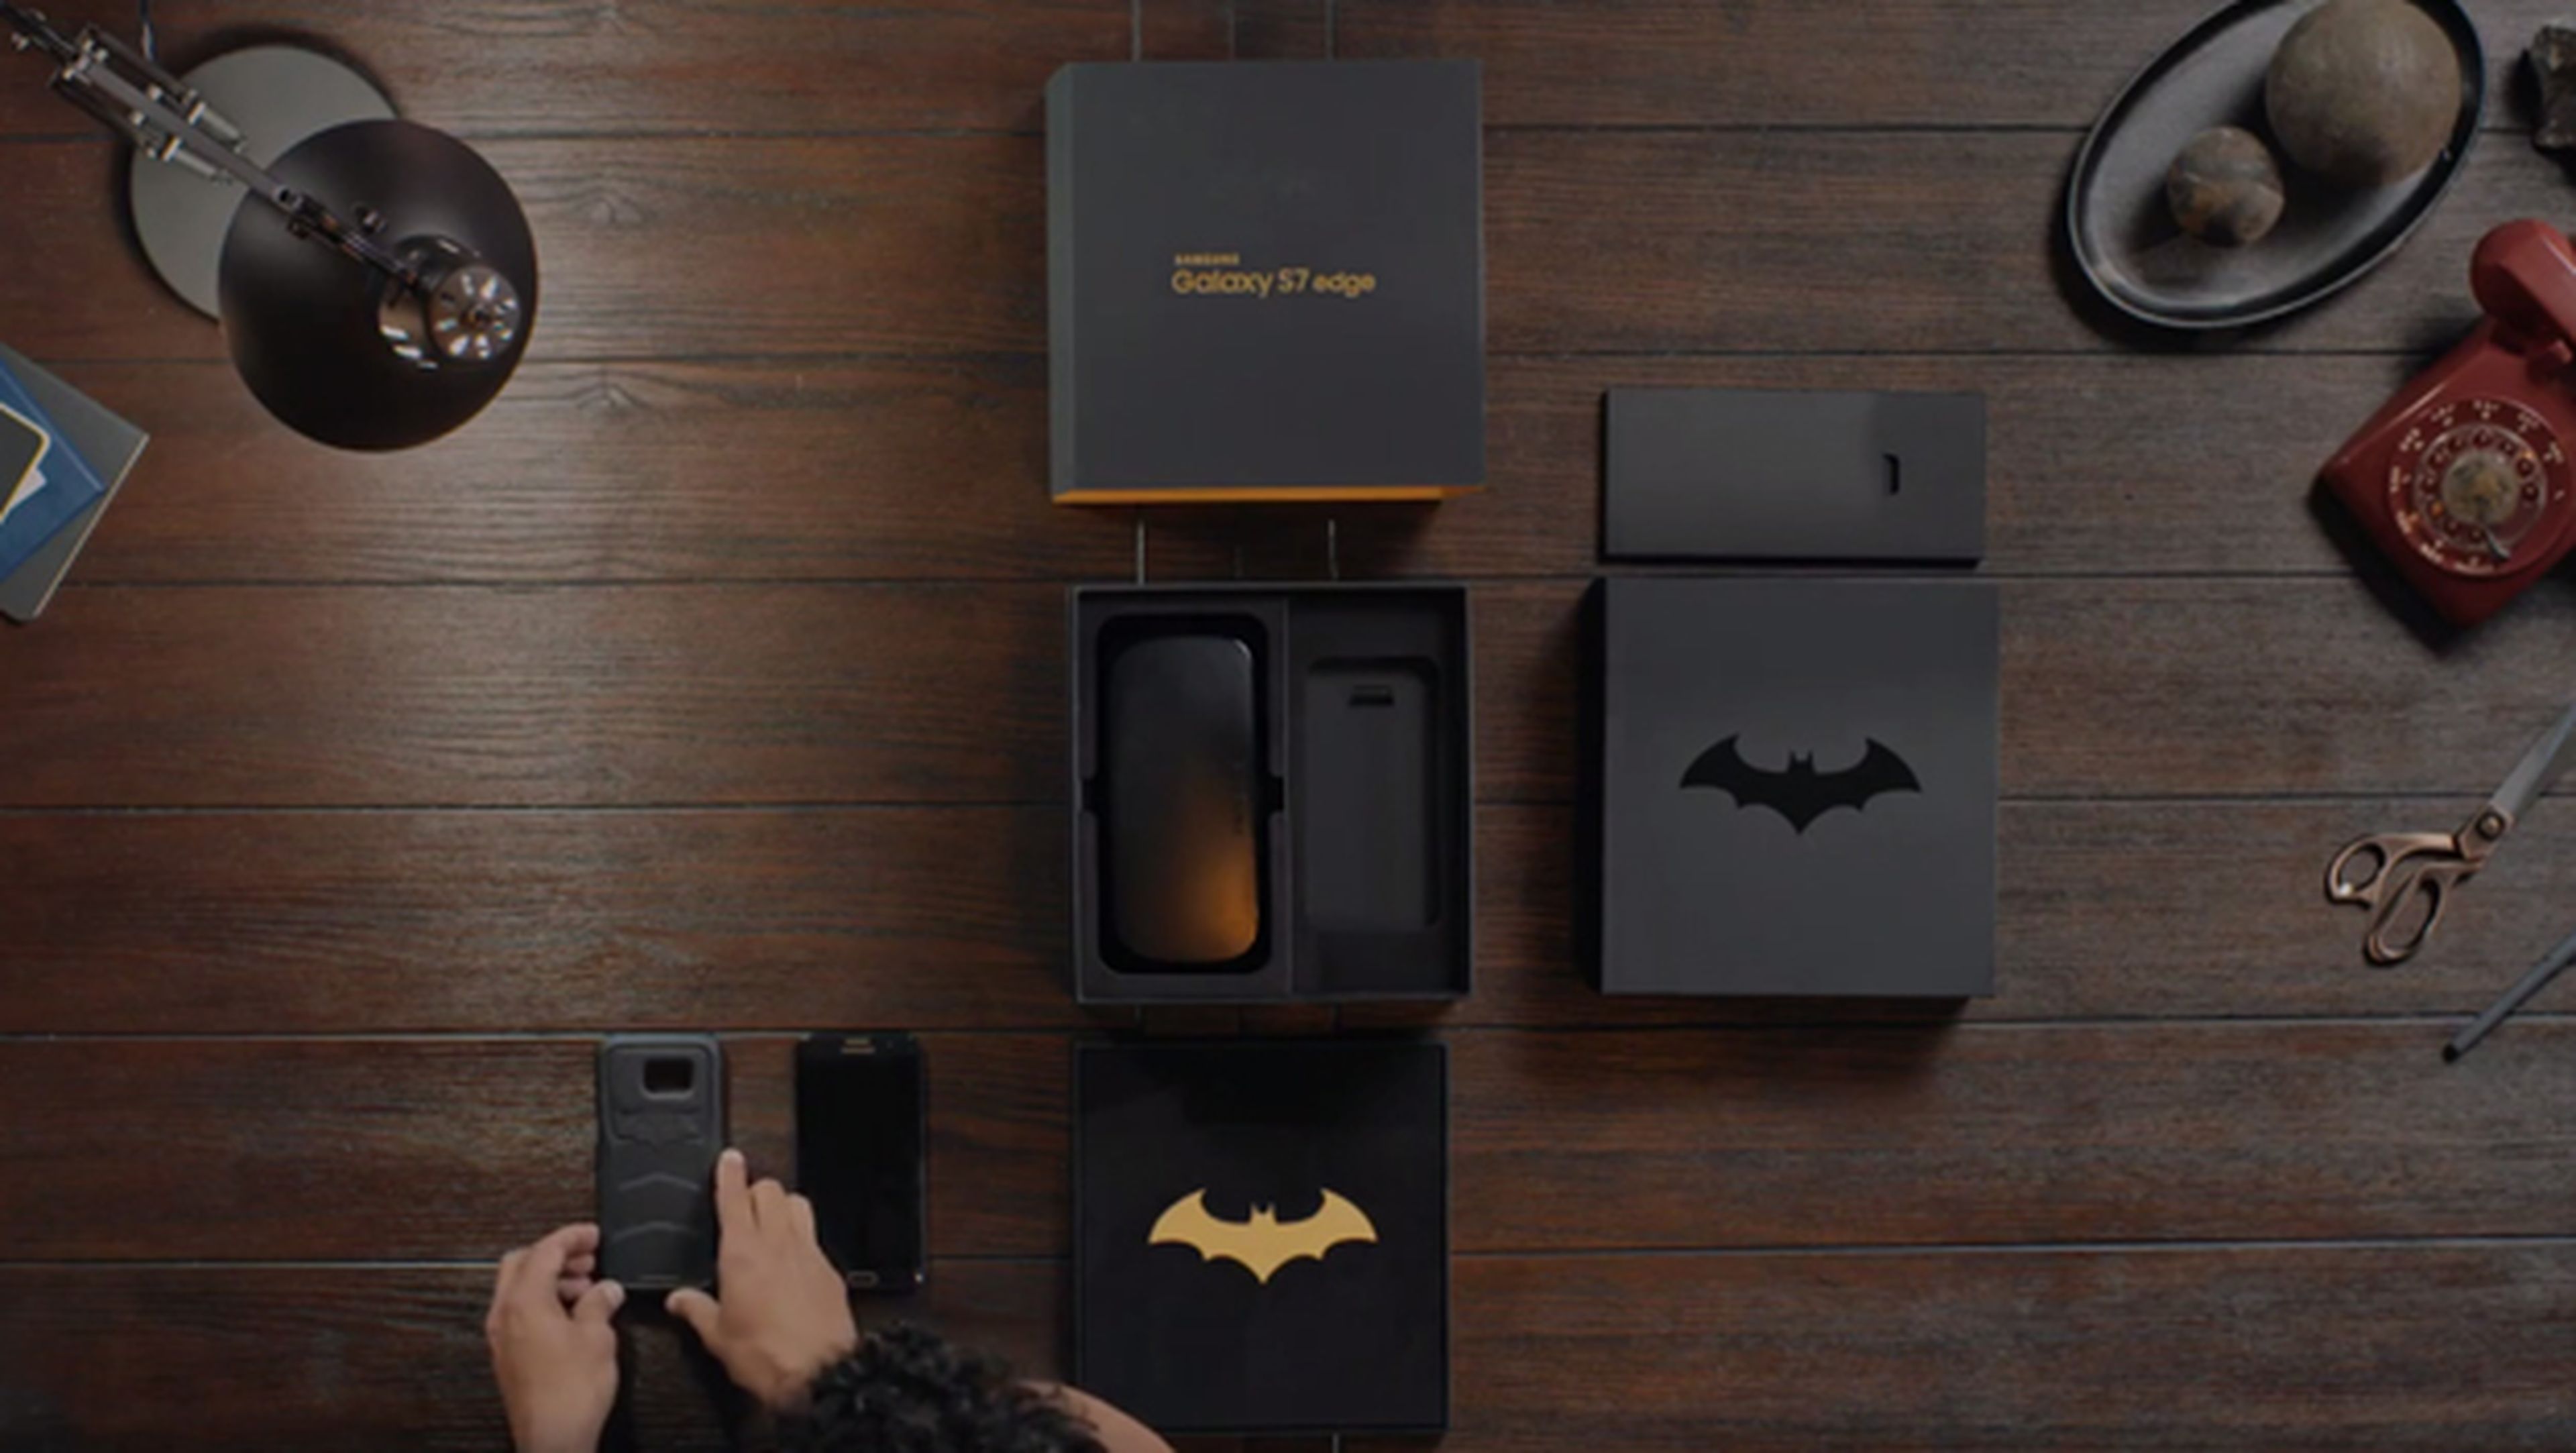 Samsung lanza una edición especial del S7 inspirada en Batman | Computer Hoy